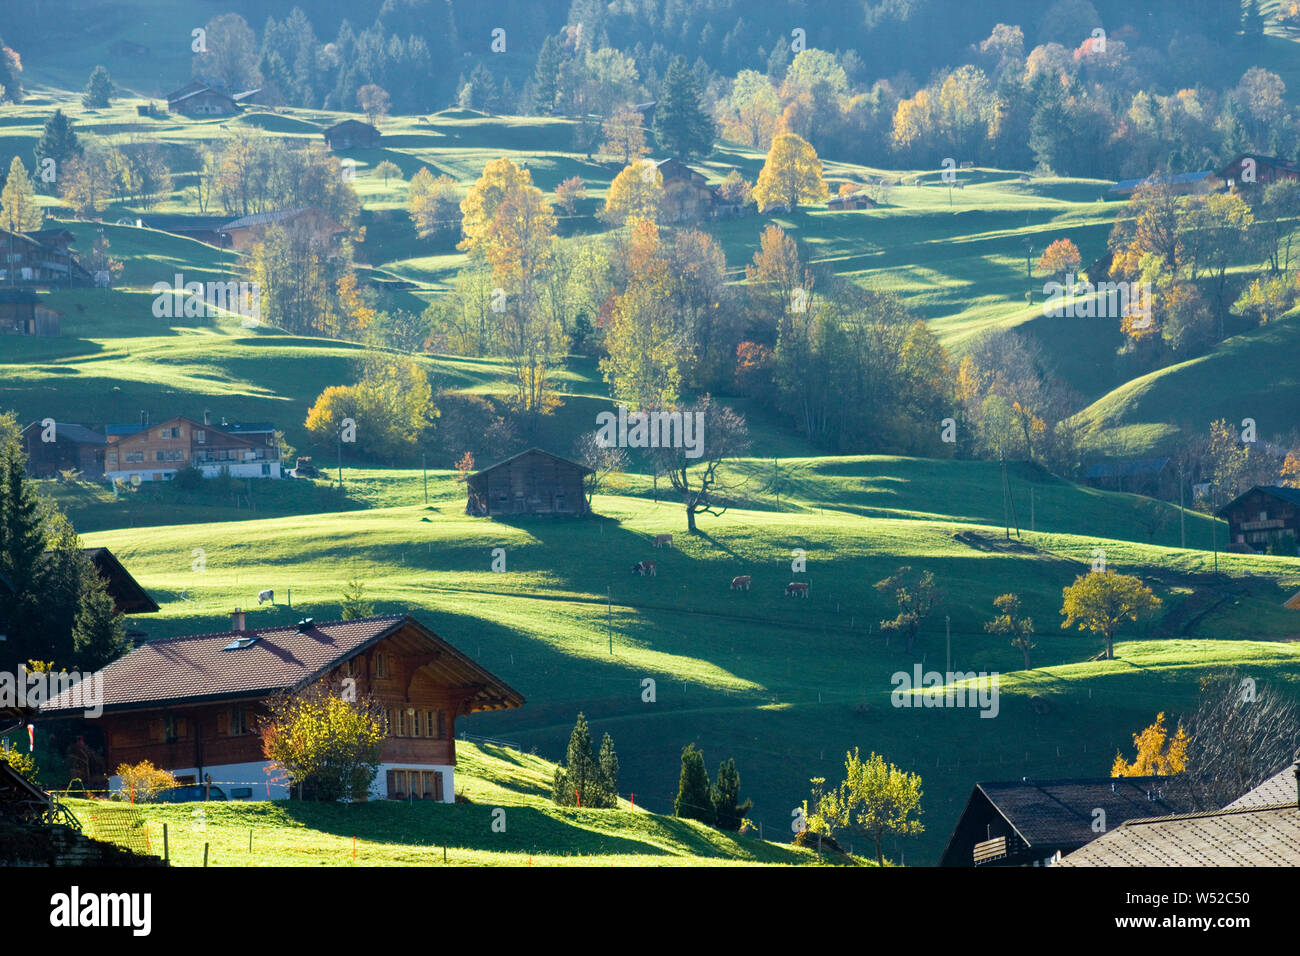 Bauernhäuser, grüne Almwiesen und herbstgelbe Ahornbäume im Streiflicht Stock Photo